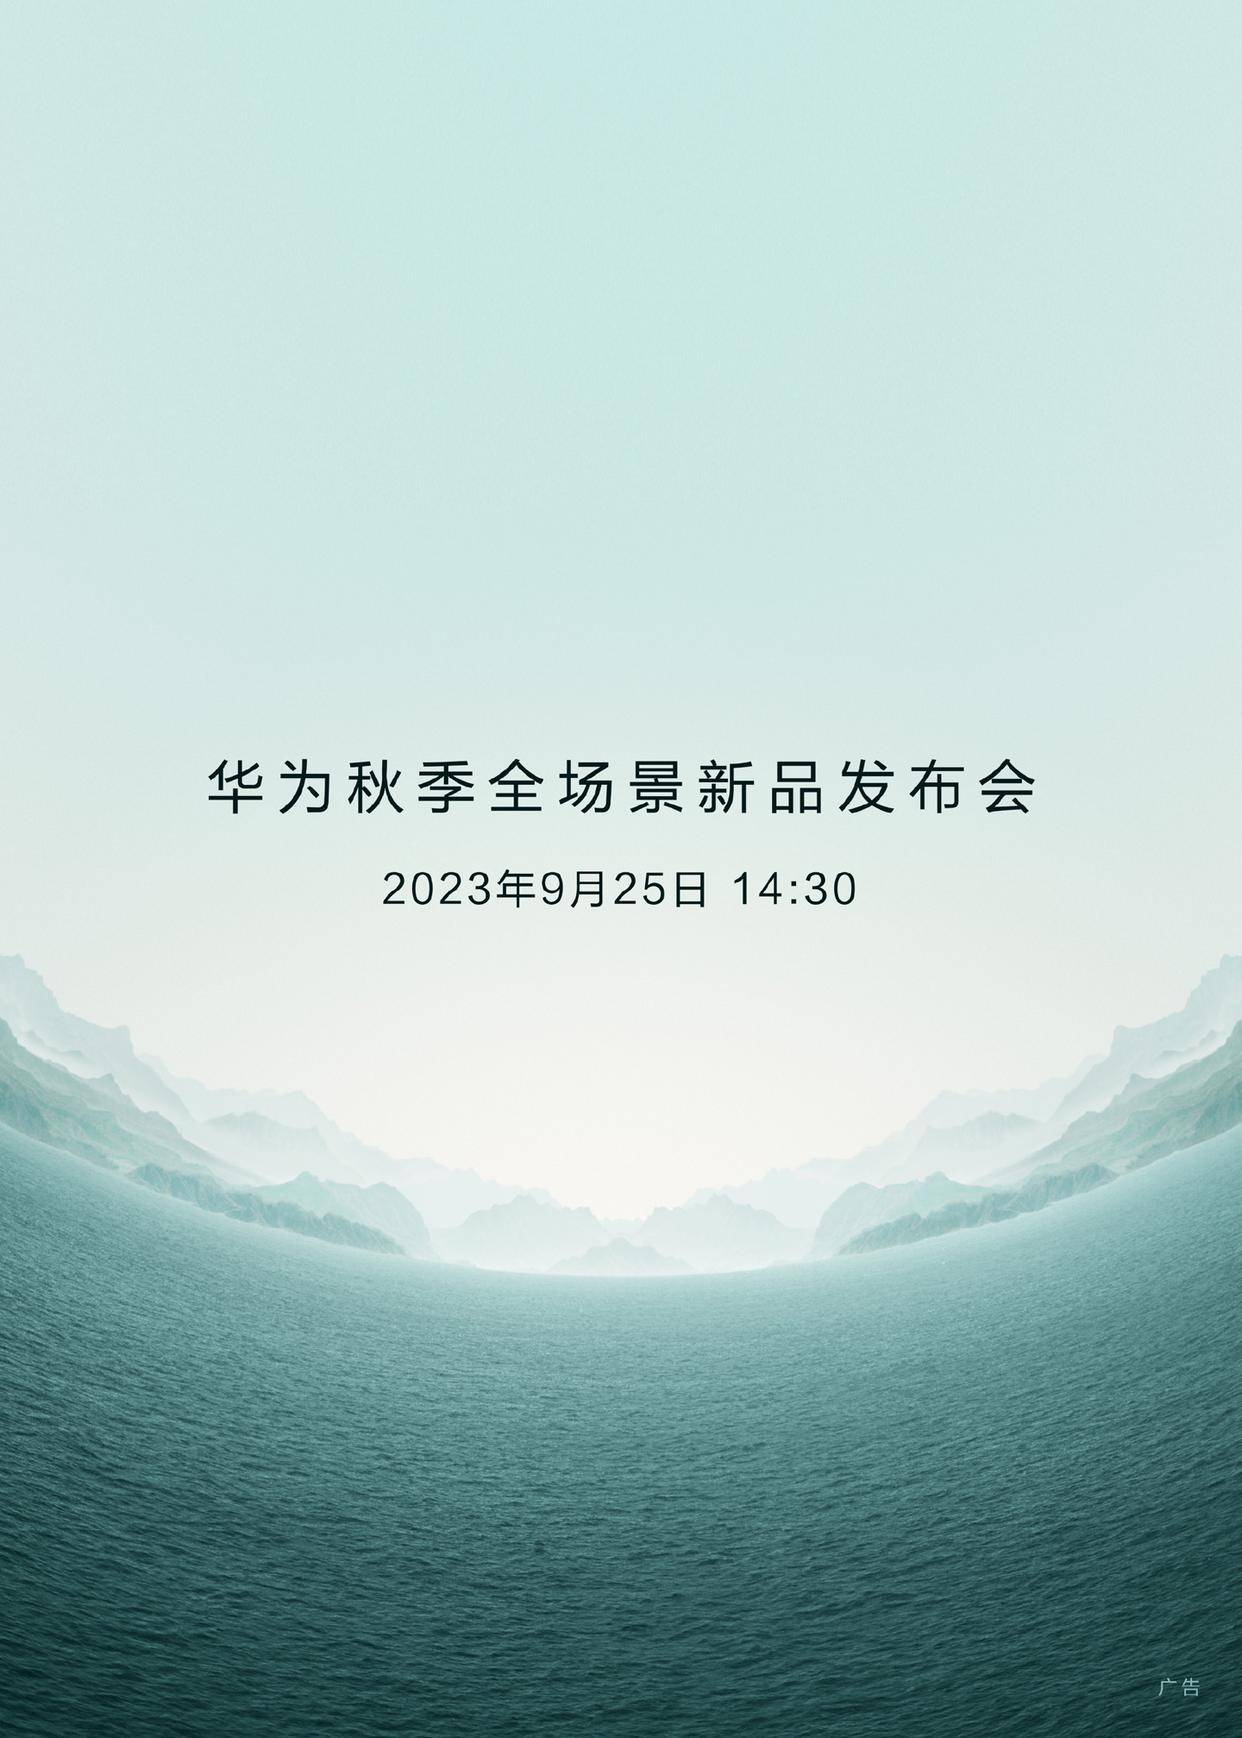 山河同心,华为秋季全场景新品发布会官宣 9 月 25 日举行